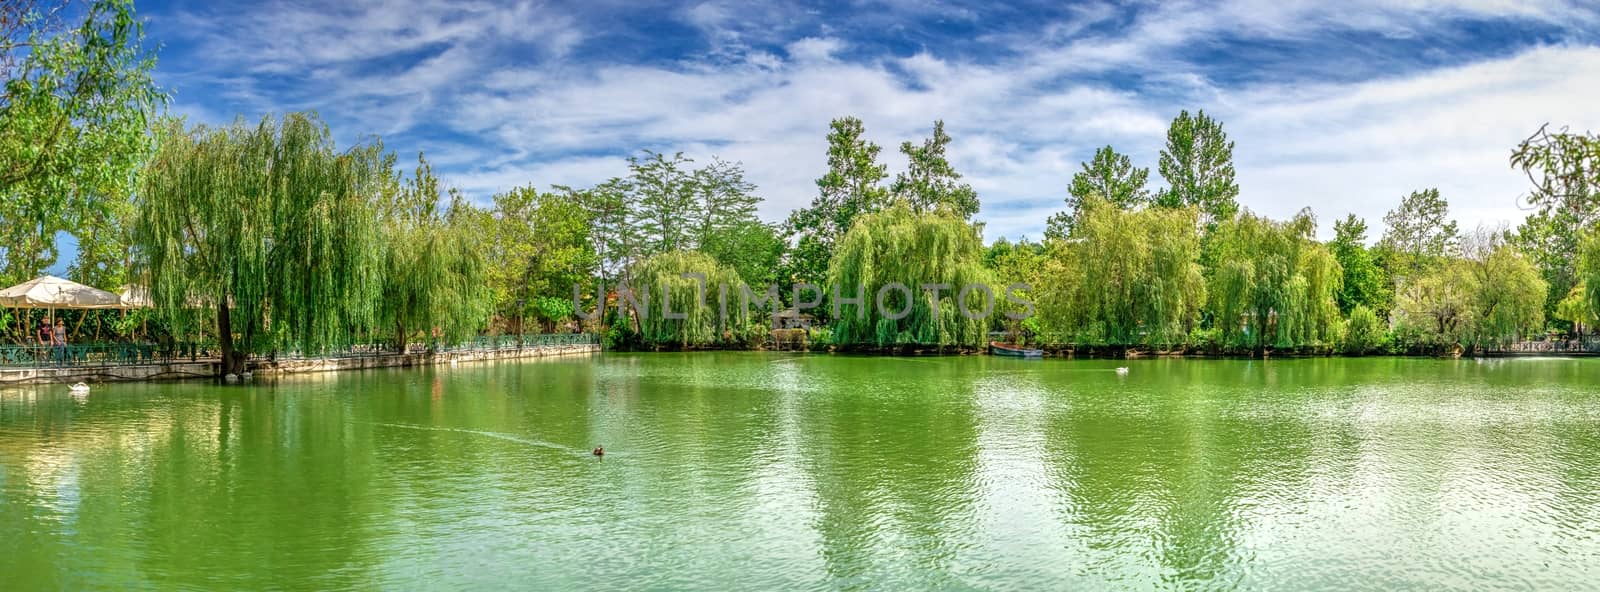 Lake in the park Ravadinovo castle, Bulgaria by Multipedia